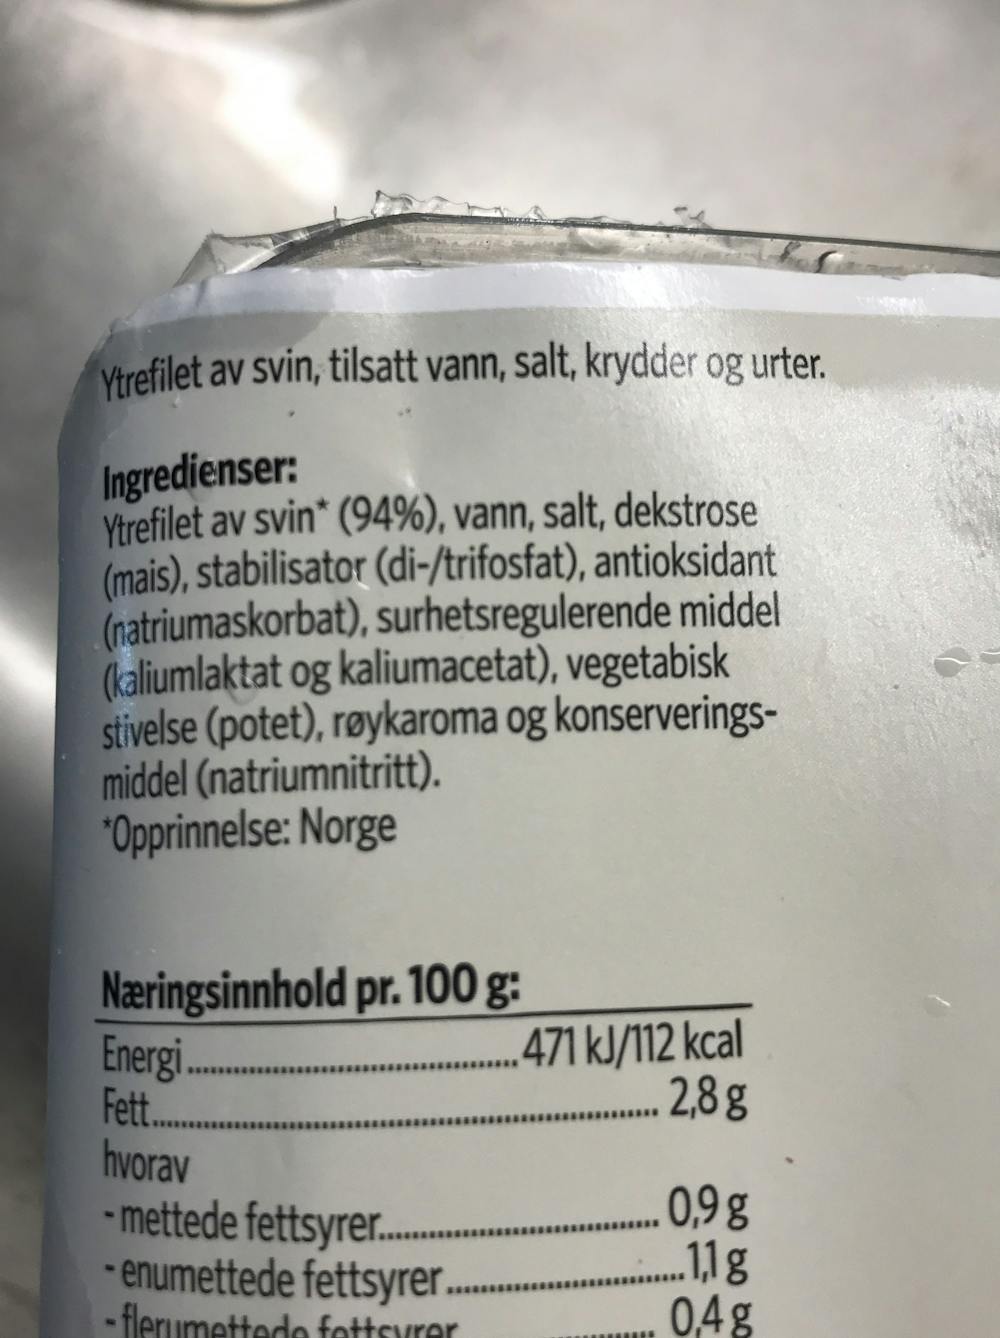 Ingredienslisten til Skivet ytrefilet av svi med røyksmak, Nordfjord